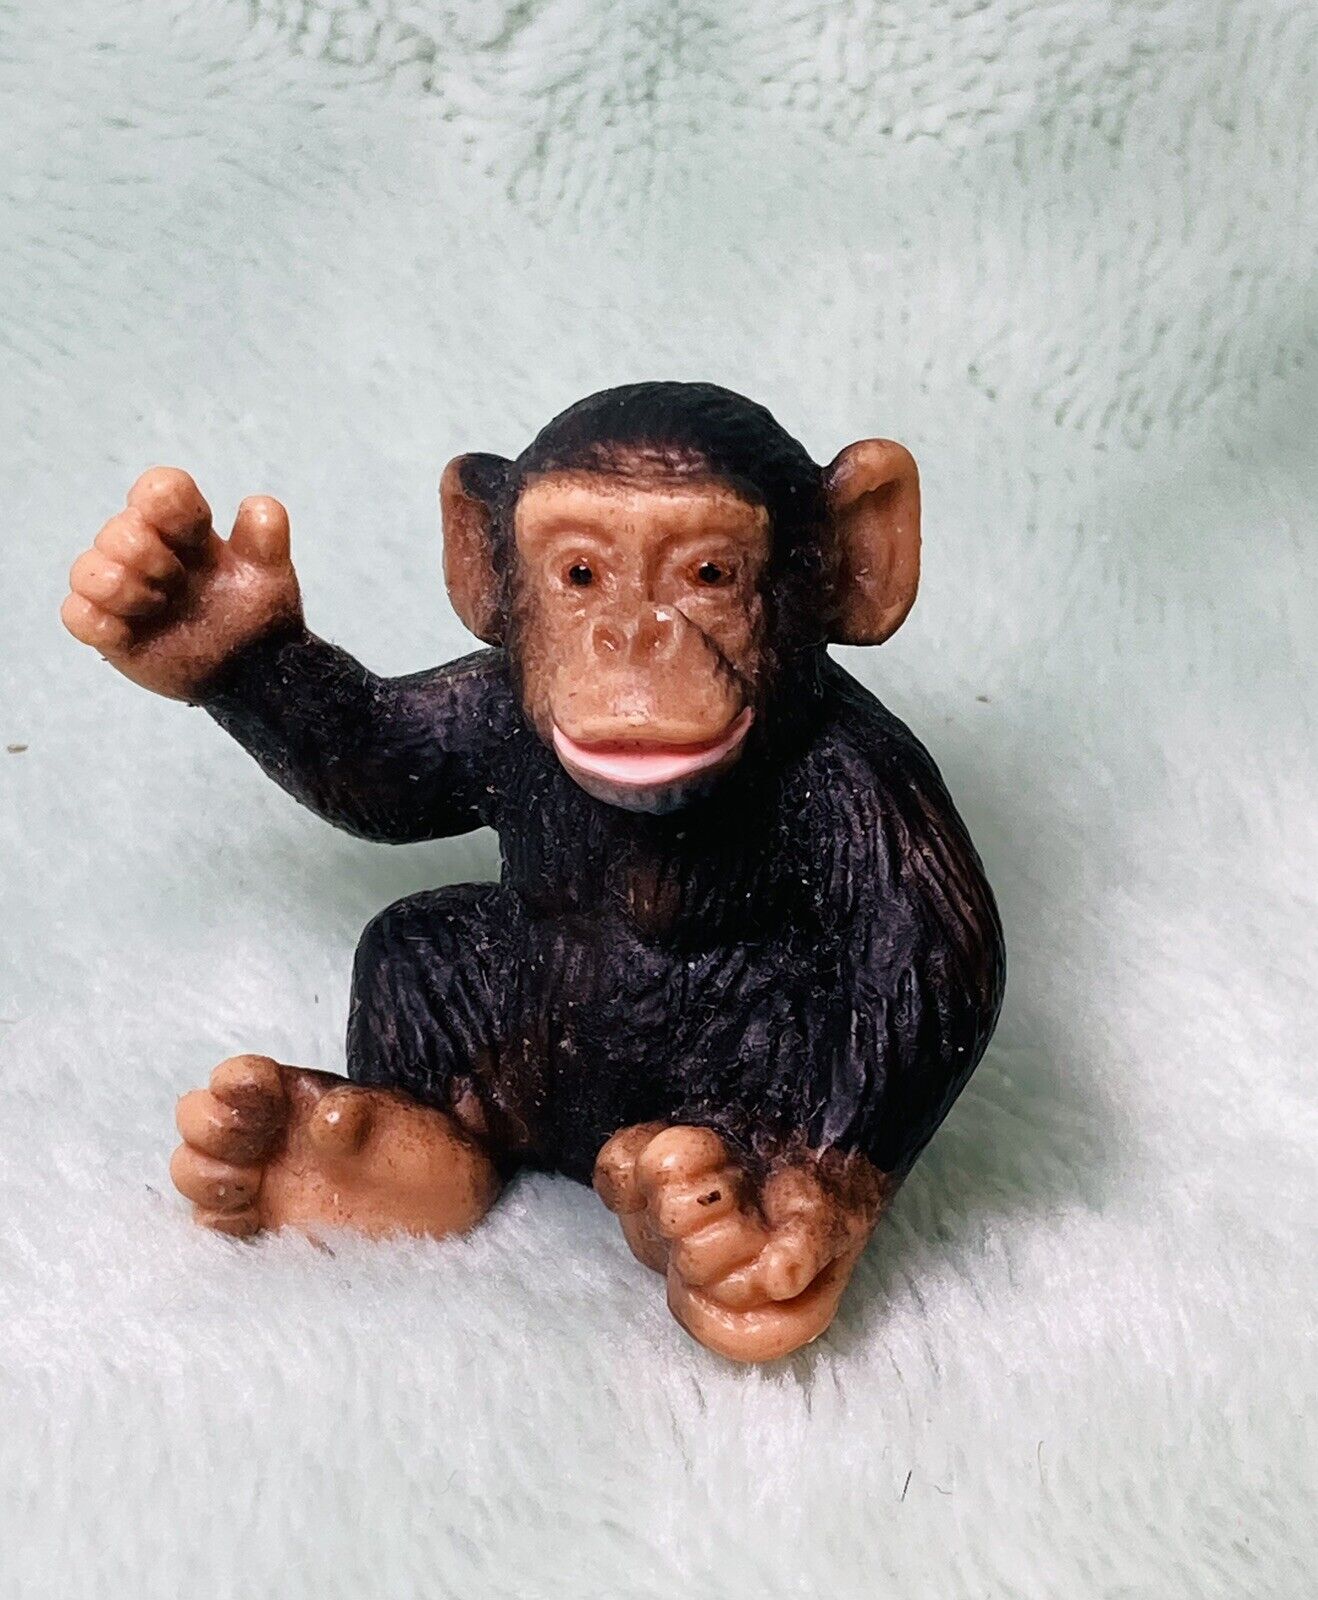 Schleich - 2001 Chimpanzee Baby - 1 1/2” Tall - Dark Brown, Sitting, Wildlife